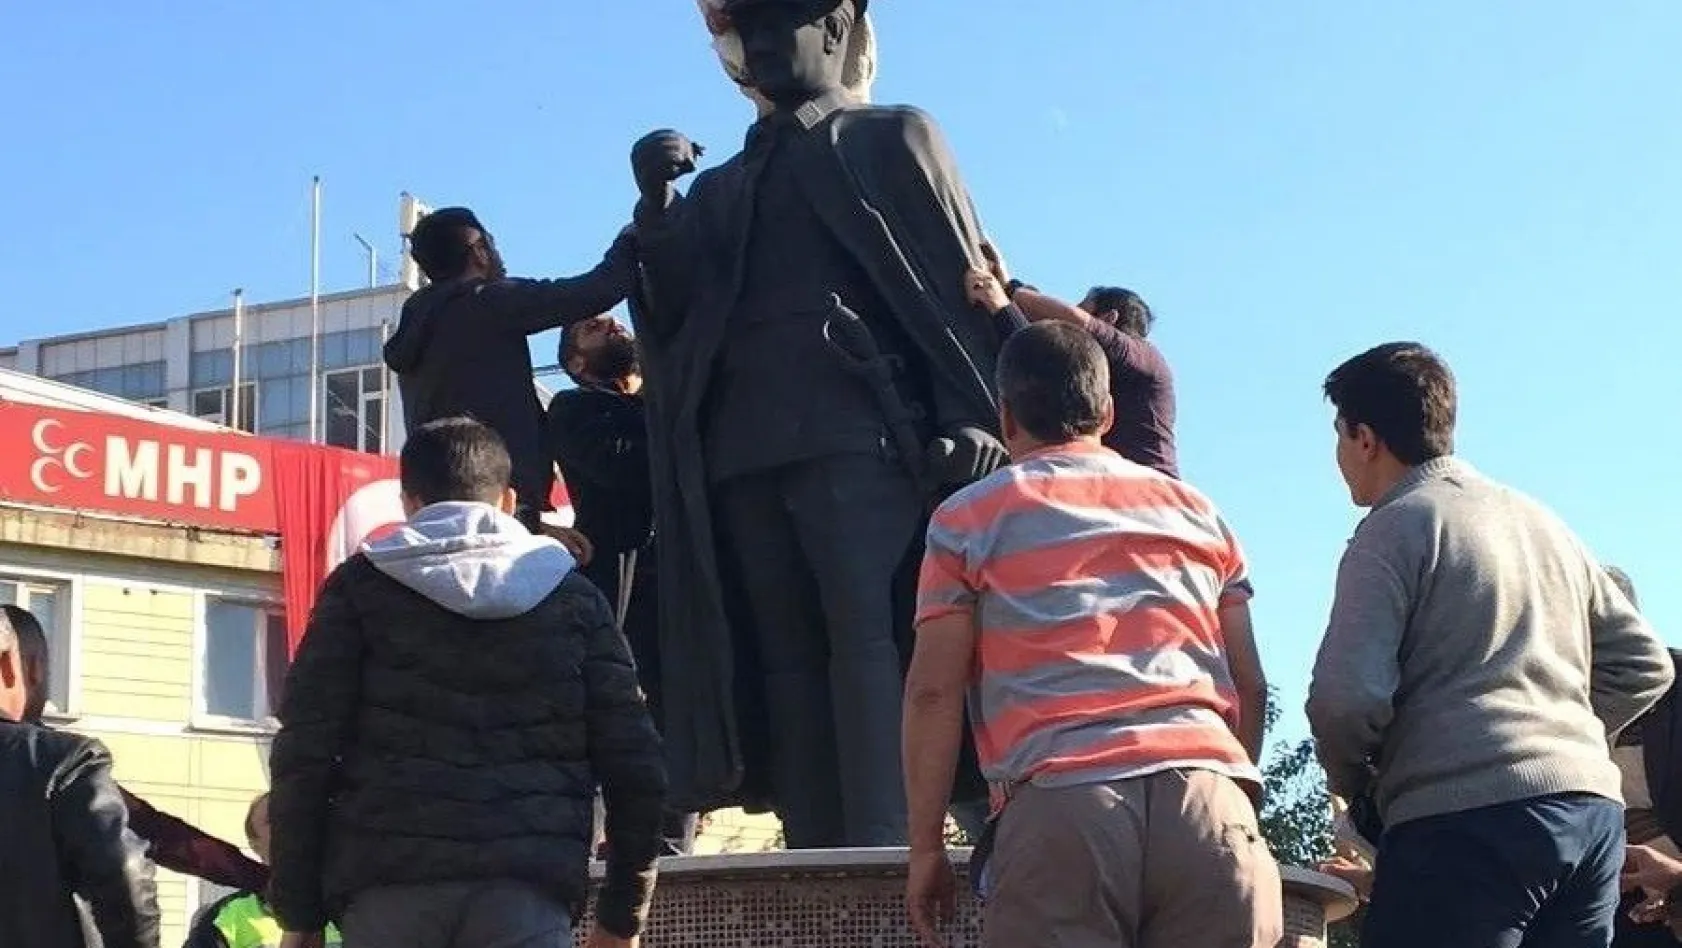 Atatürk heykelinin üzerine çıkan madde bağımlısına linç girişimi
